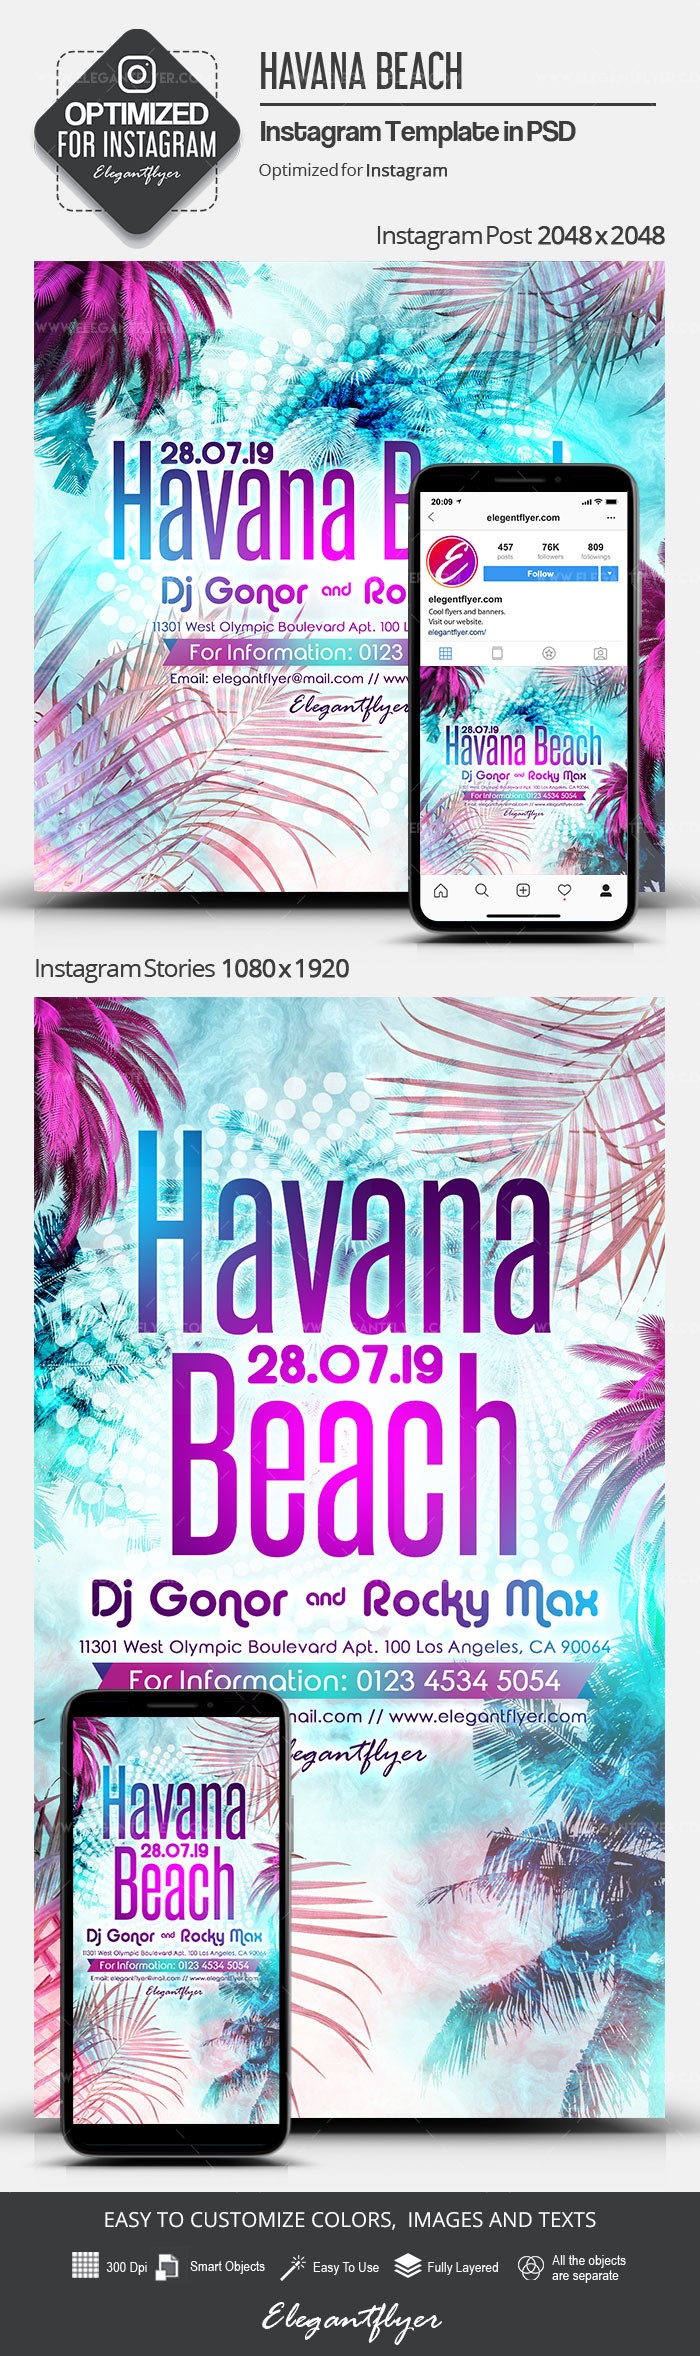 哈瓦那海滩Instagram by ElegantFlyer